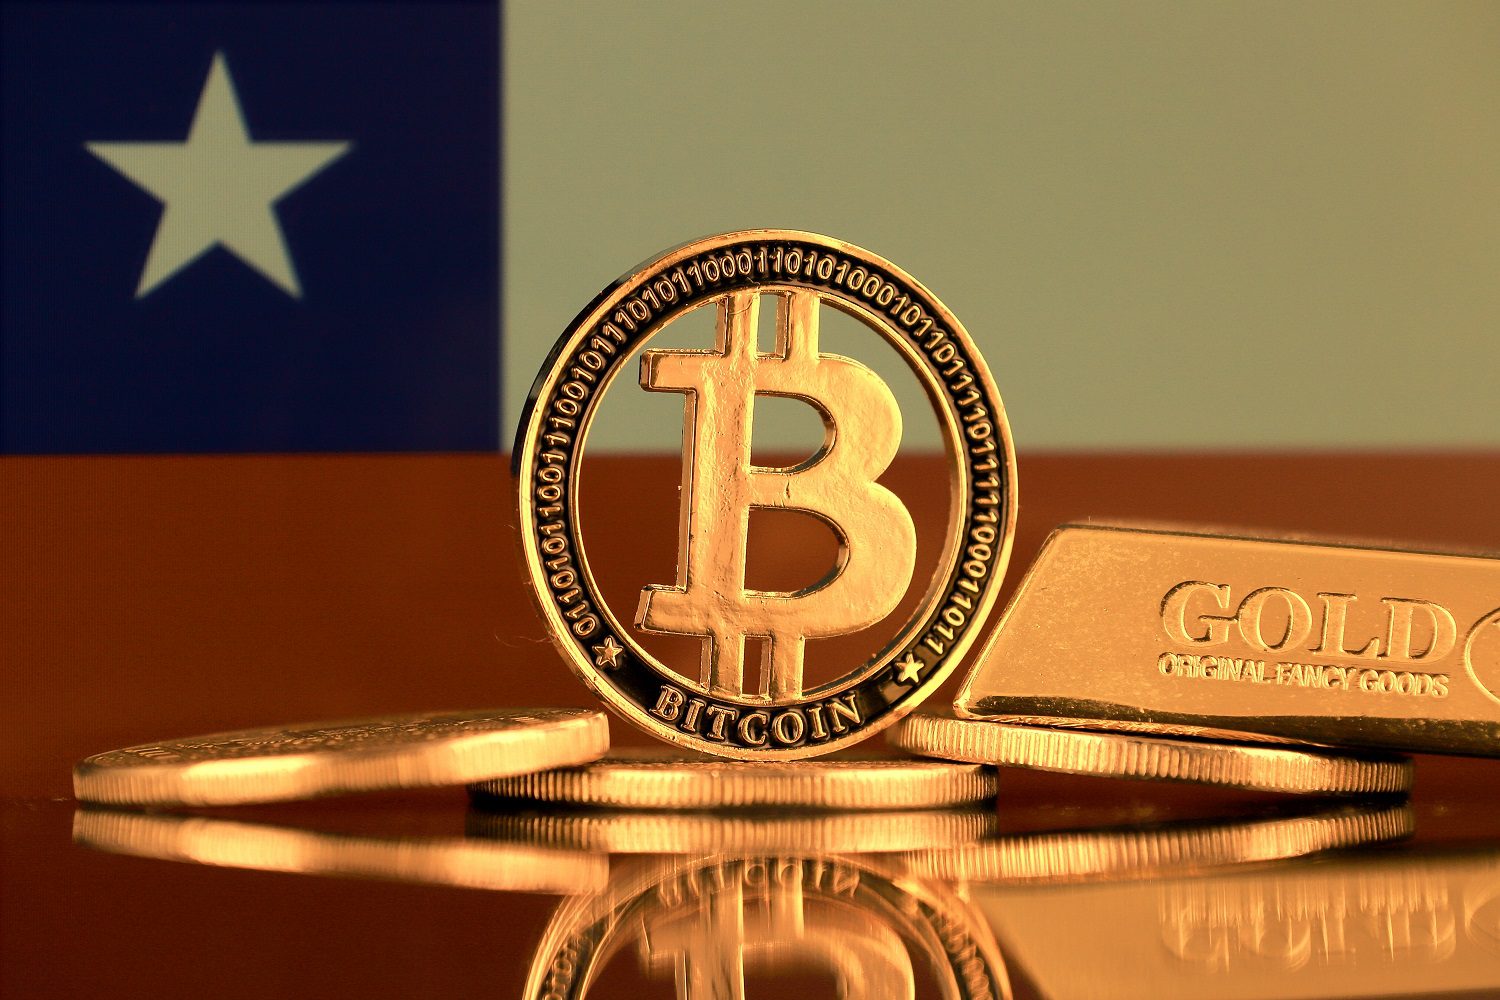 Un token de metal destinado a representar Bitcoin, junto con otros tokens, una barra de oro, con el telón de fondo de la bandera chilena.